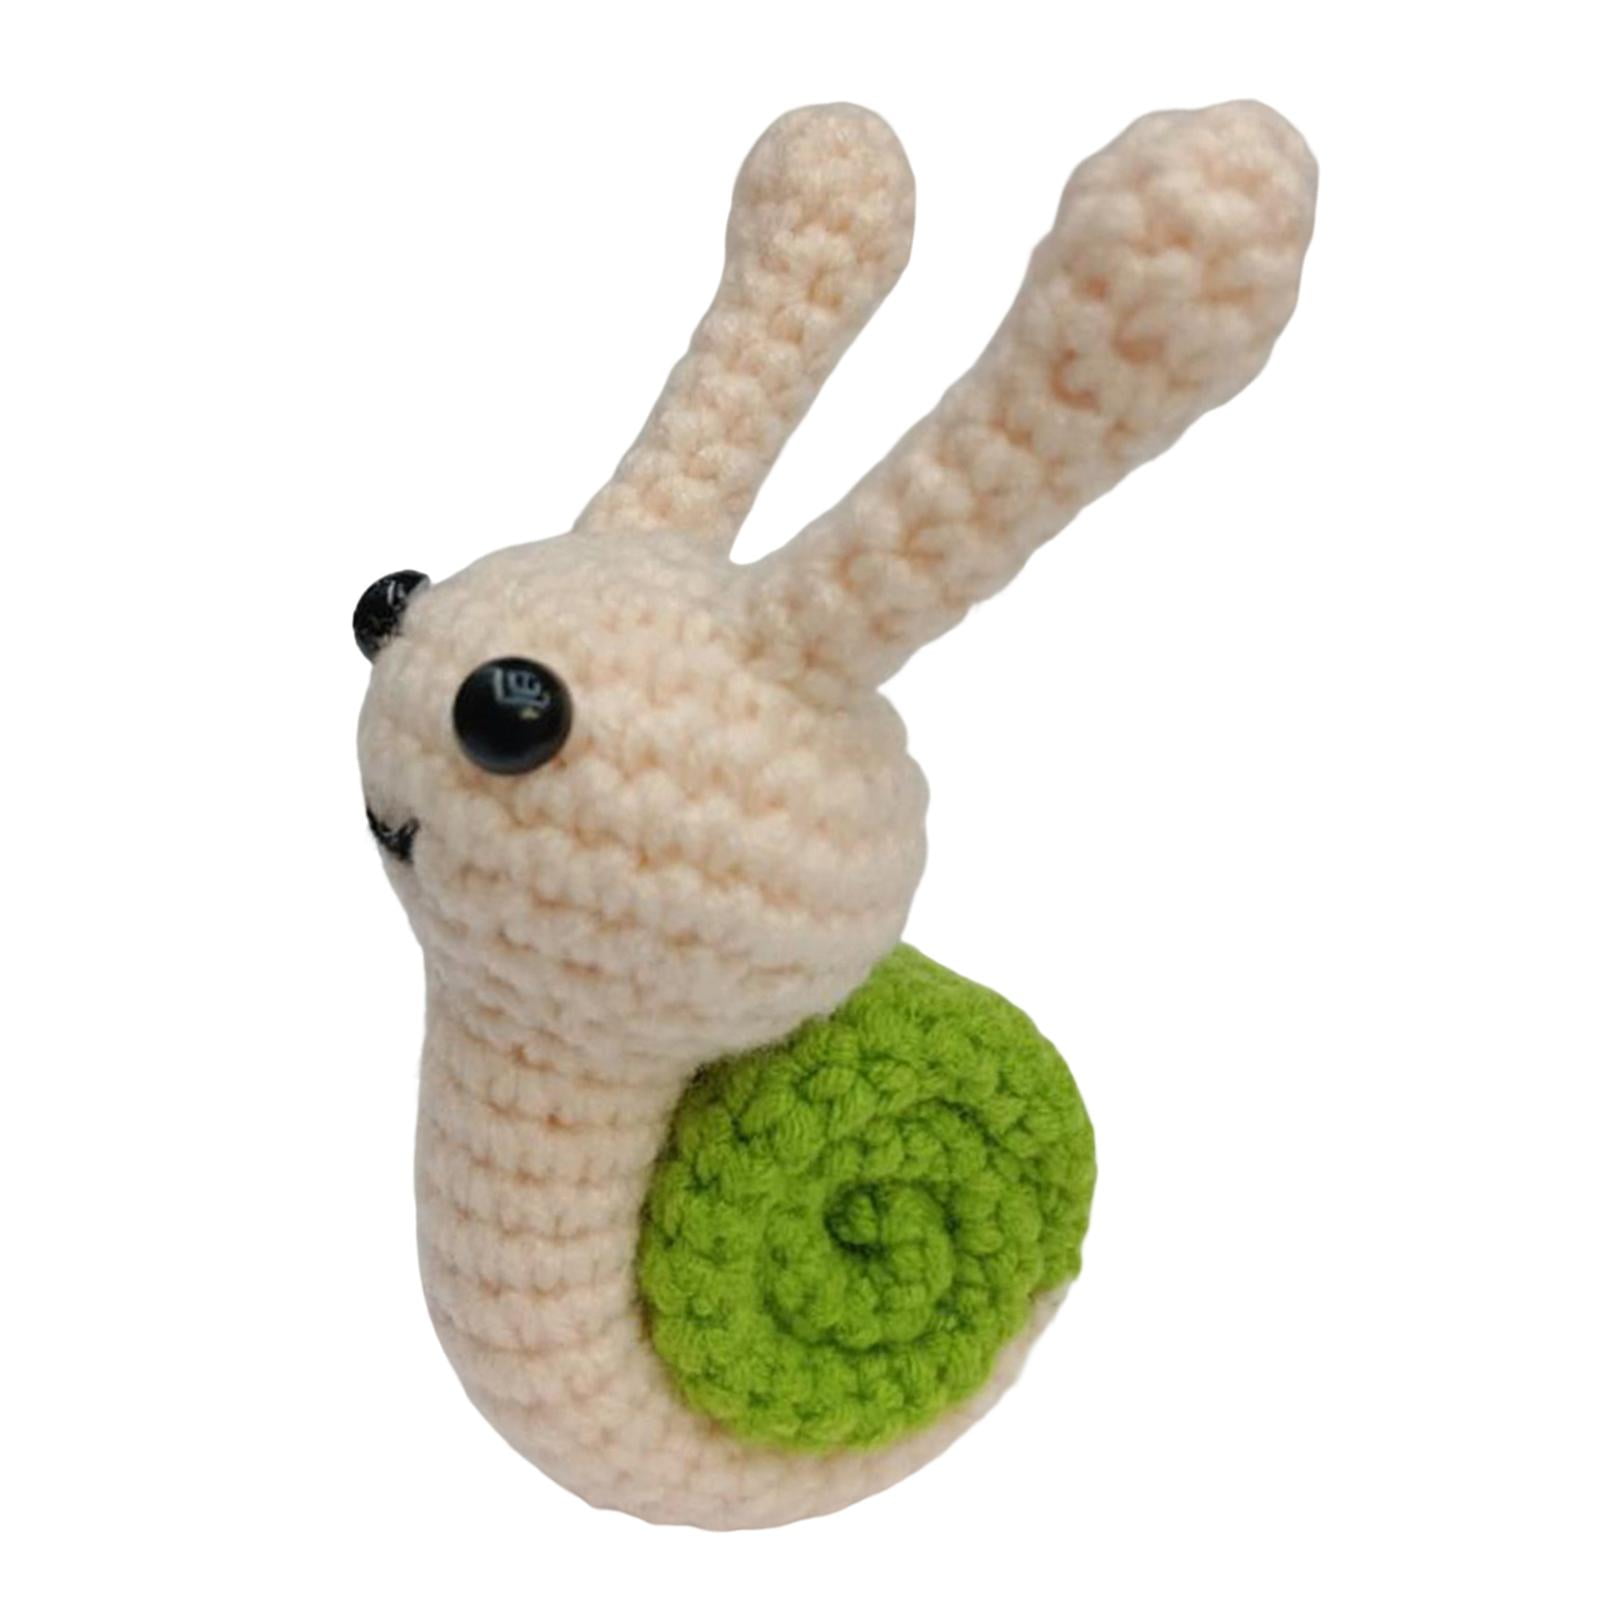 Beginner Crochet Kit for Kids Owl Hedgehog Squirrel Cotton Crochet Starter  DIY Craft Complete Material Pack Handicraft Supplies - AliExpress